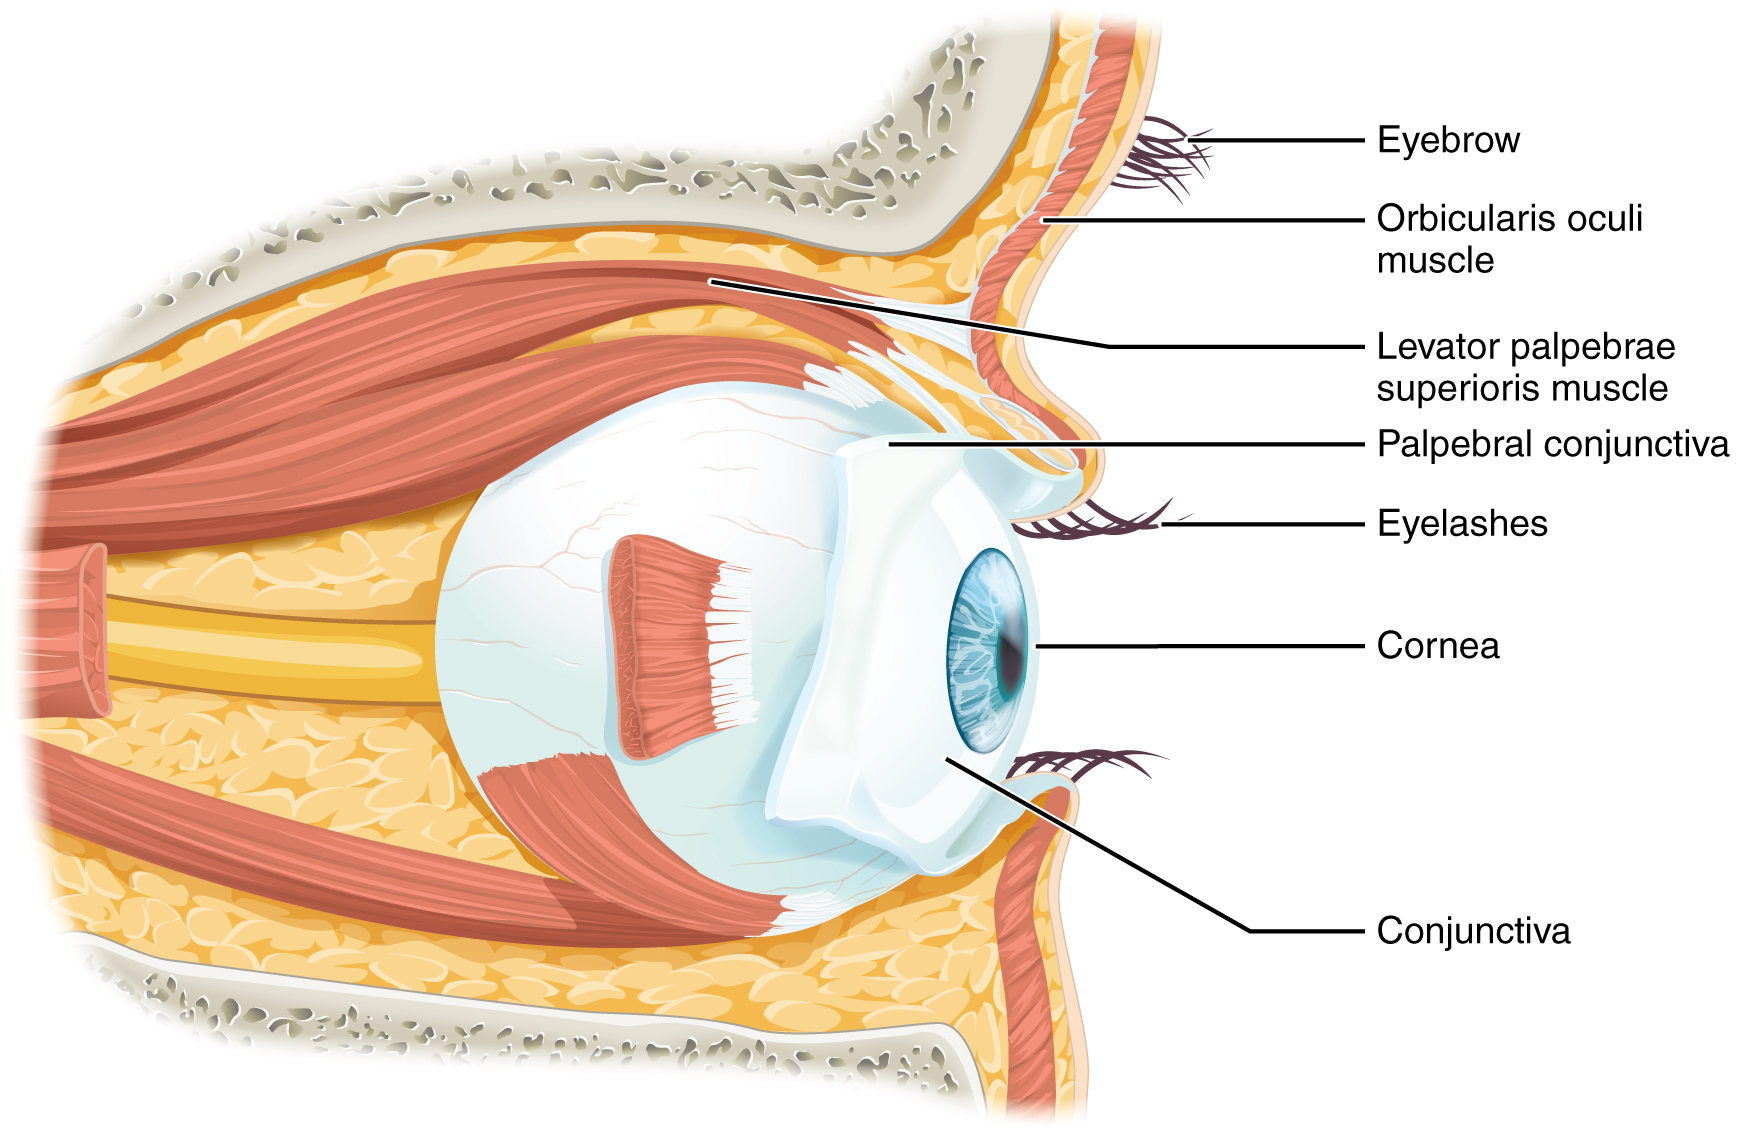 Este diagrama muestra la vista lateral del ojo. Las partes principales están etiquetadas. Etiquetas leídas (desde arriba): ceja ocular, músculo orbicular ocular, músculo elevador palpebrae superioris, conjuntiva palpebral, pestañas, córnea, cojuntiva.